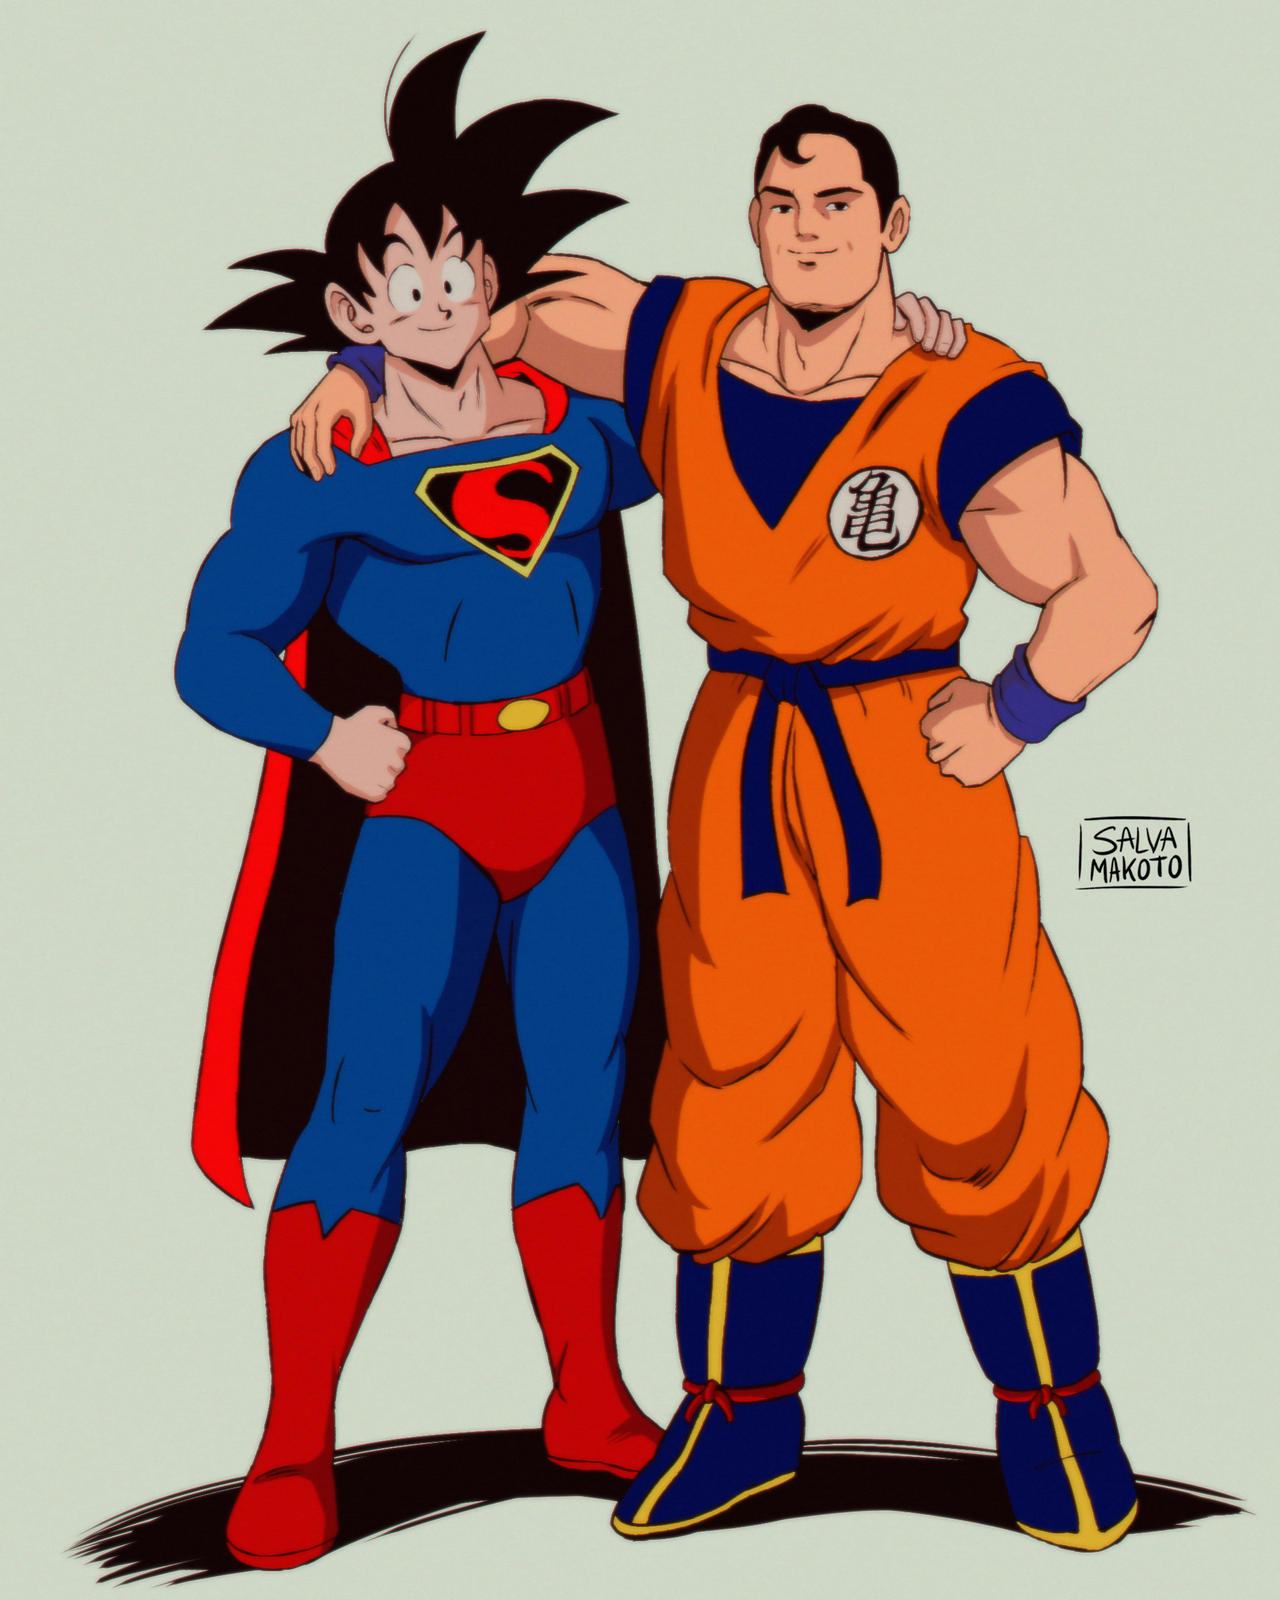 Superman x Goku - Quem leva? Goku_y_superman_by_salvamakoto_dfc29wn-fullview.jpg?token=eyJ0eXAiOiJKV1QiLCJhbGciOiJIUzI1NiJ9.eyJzdWIiOiJ1cm46YXBwOjdlMGQxODg5ODIyNjQzNzNhNWYwZDQxNWVhMGQyNmUwIiwiaXNzIjoidXJuOmFwcDo3ZTBkMTg4OTgyMjY0MzczYTVmMGQ0MTVlYTBkMjZlMCIsIm9iaiI6W1t7ImhlaWdodCI6Ijw9MTYwMCIsInBhdGgiOiJcL2ZcLzBiMDE5MzdhLWZiZTAtNGQzZC04YjU1LTcyZDJmOWIwOTY4YVwvZGZjMjl3bi1mZTZlN2FmMS1lYWQ5LTRhMWEtOWZiMi02MjlhMTdjMTA3YjYuanBnIiwid2lkdGgiOiI8PTEyODAifV1dLCJhdWQiOlsidXJuOnNlcnZpY2U6aW1hZ2Uub3BlcmF0aW9ucyJdfQ